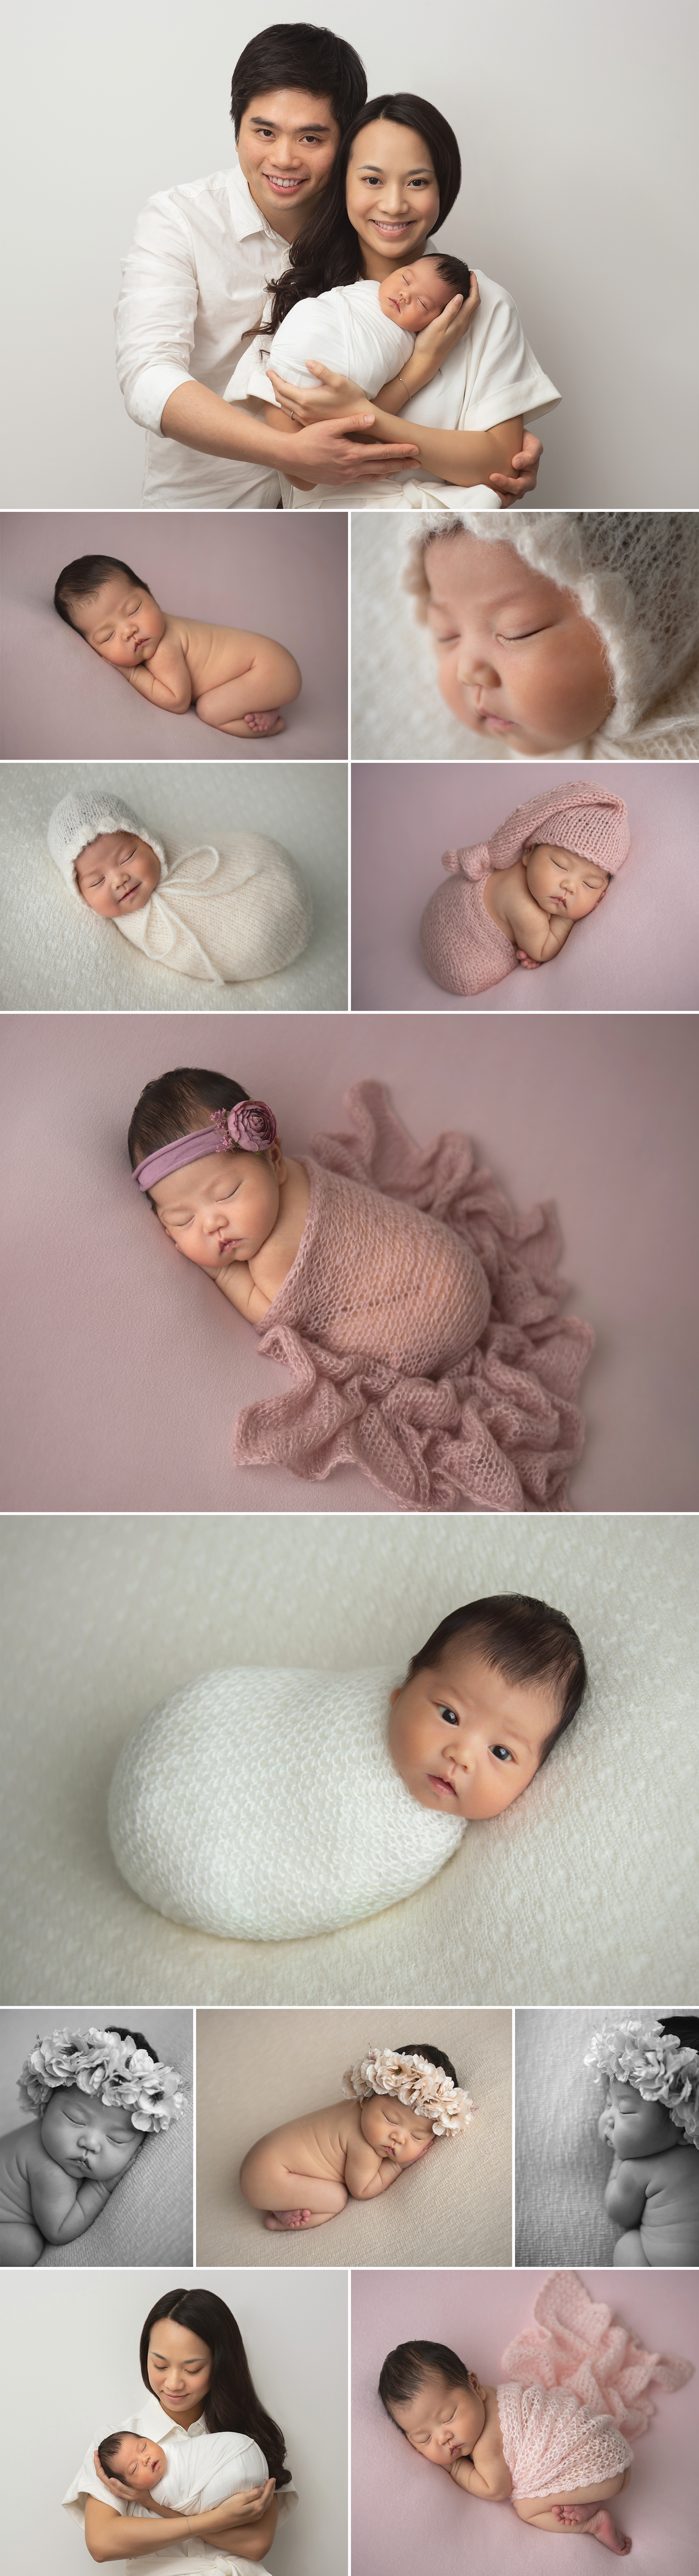 newborn family home photoshoot photographer